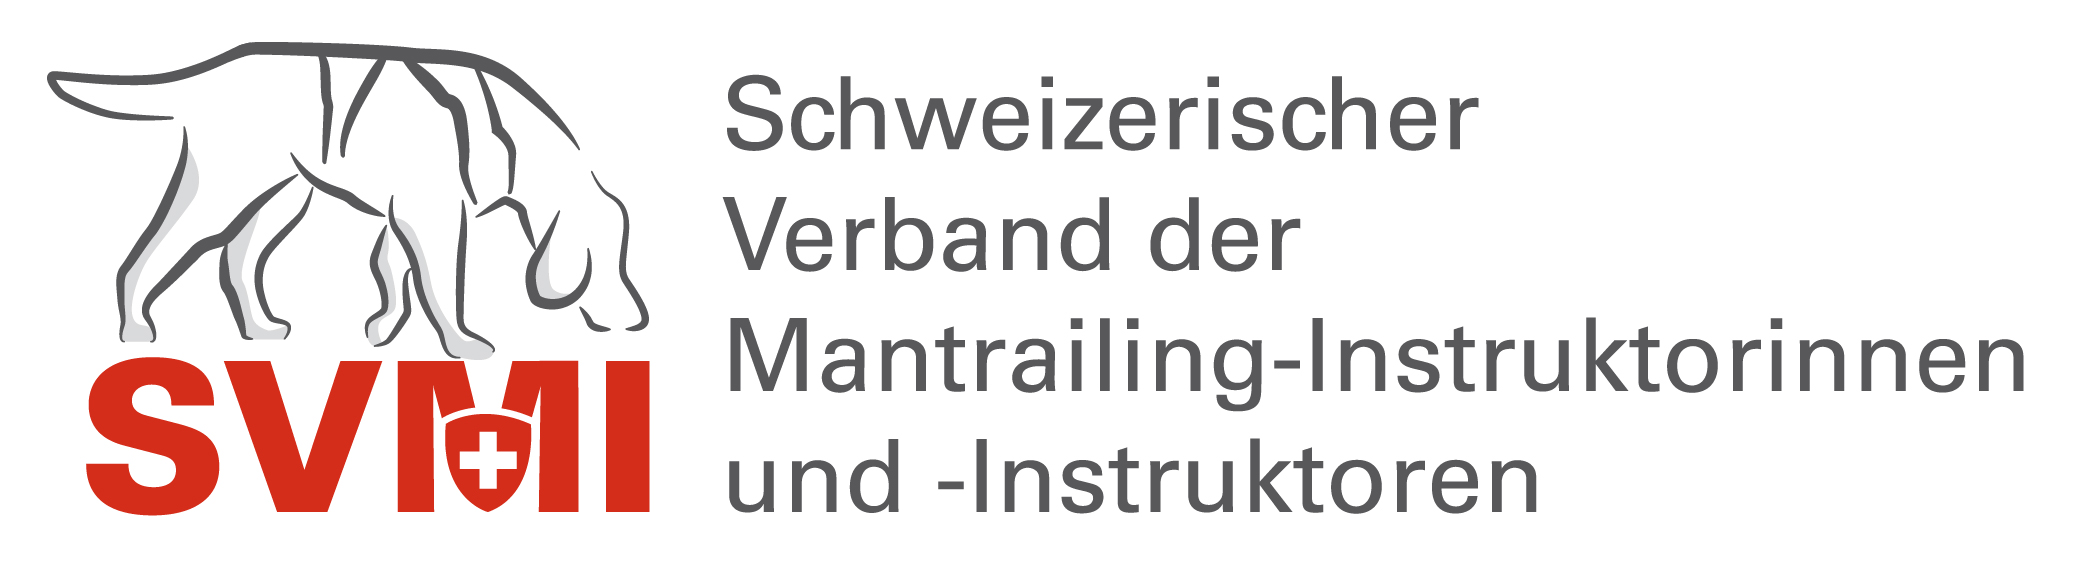 SVMI - Schweizerischer Verband Mantrailing Instruktorinnen und Instruktoren